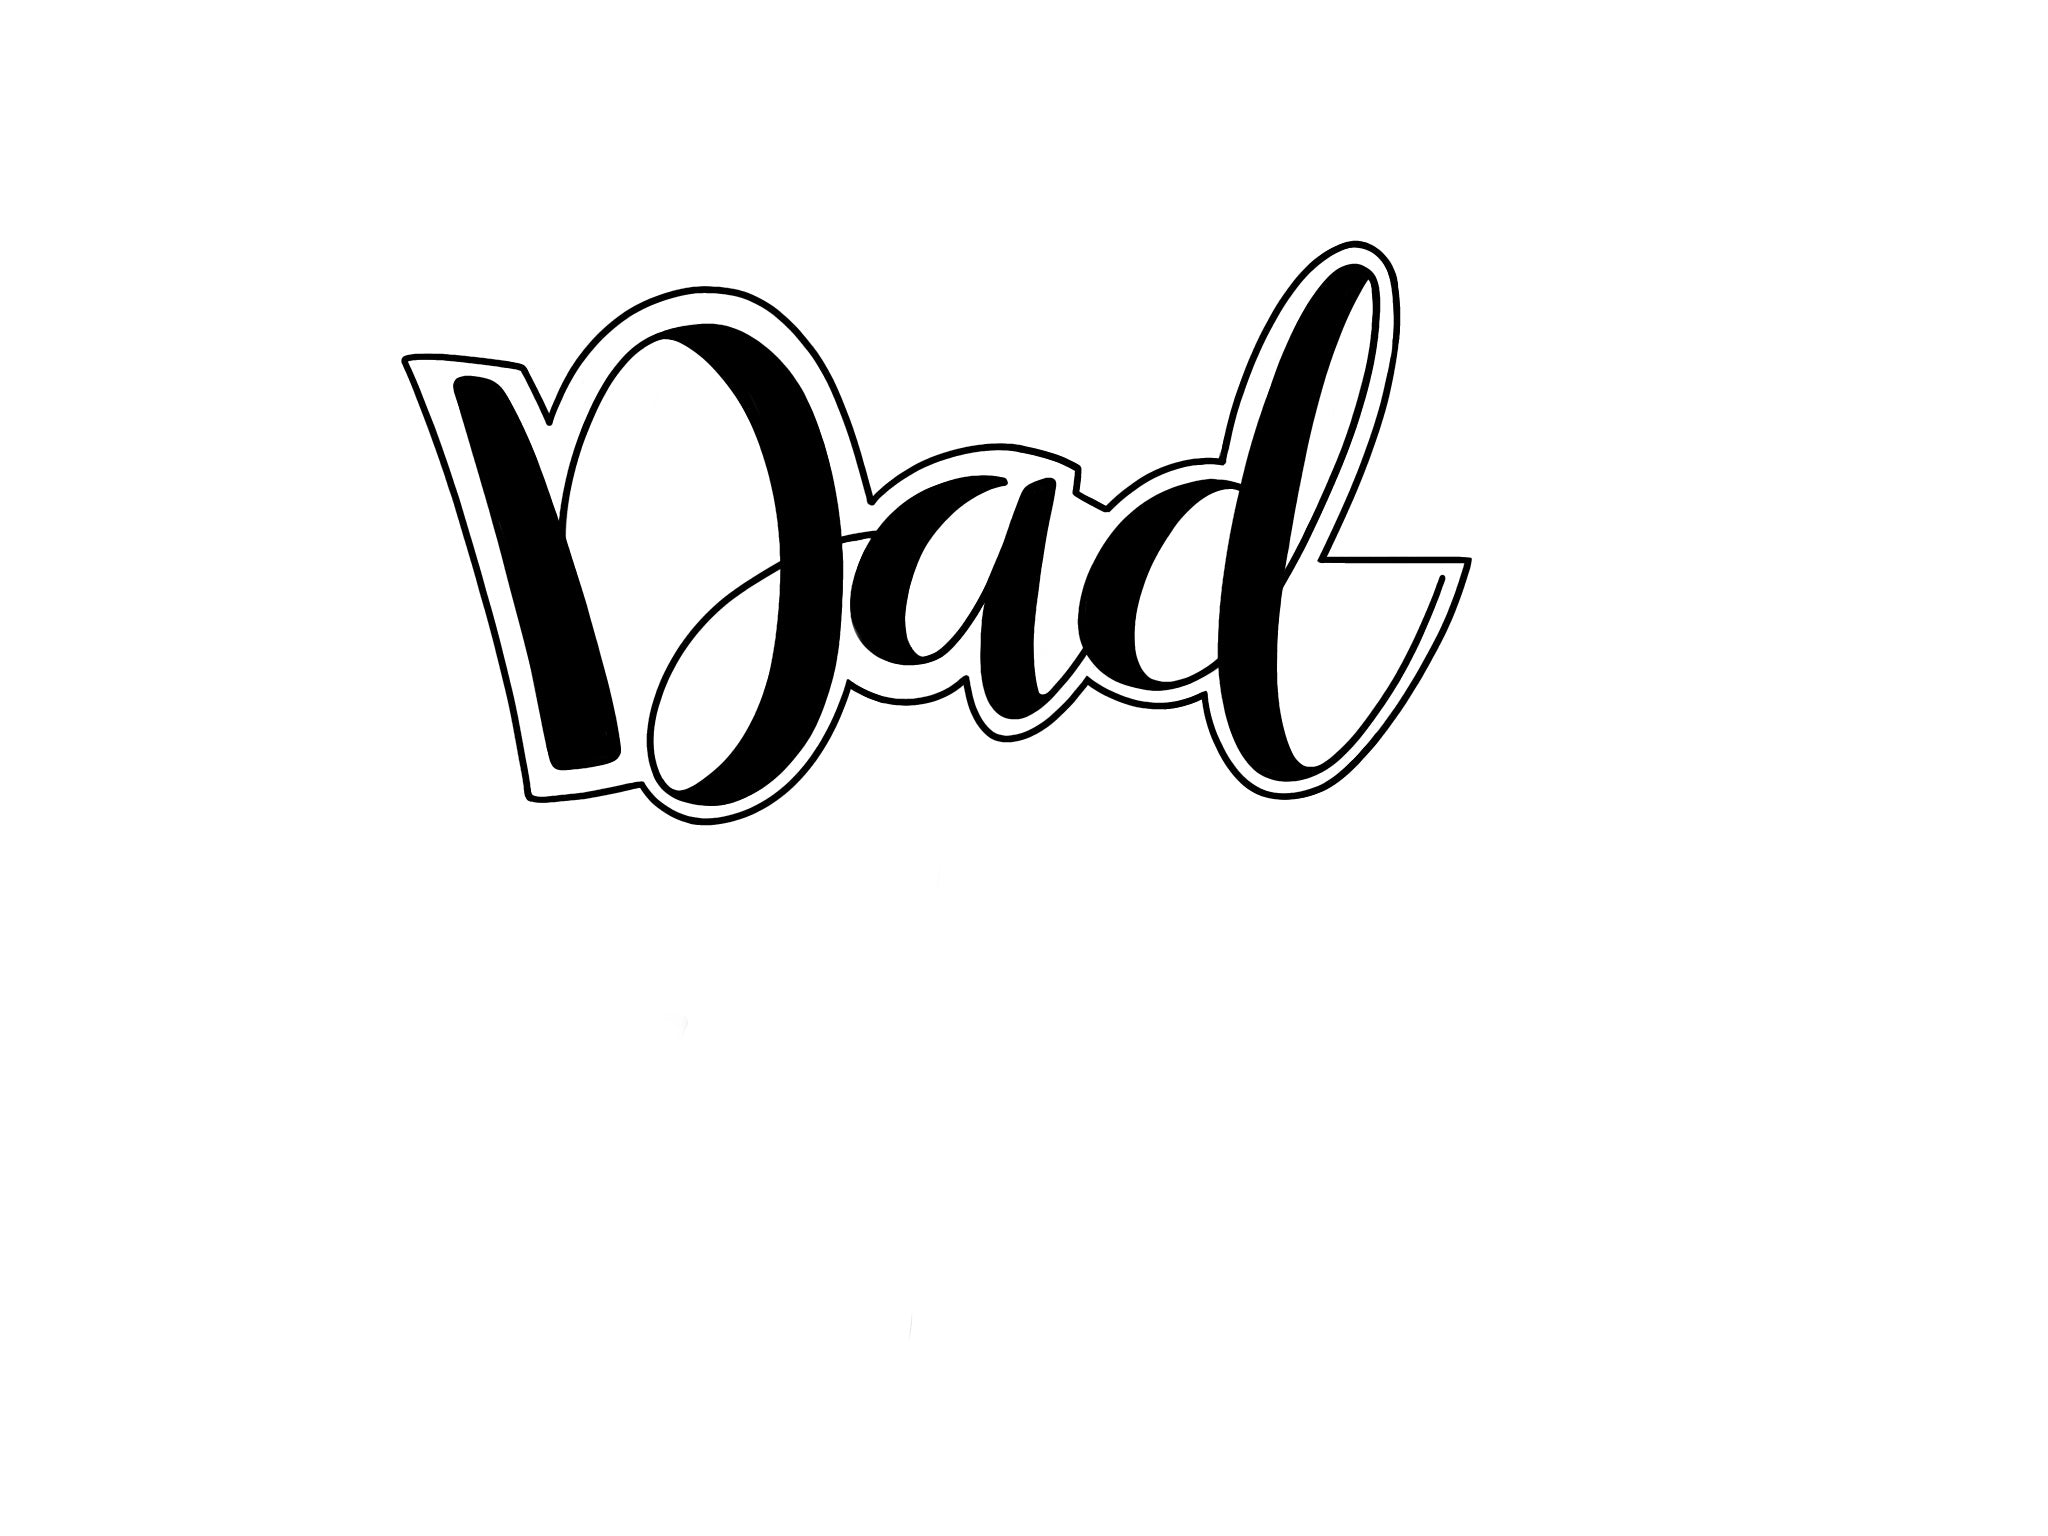 Dad